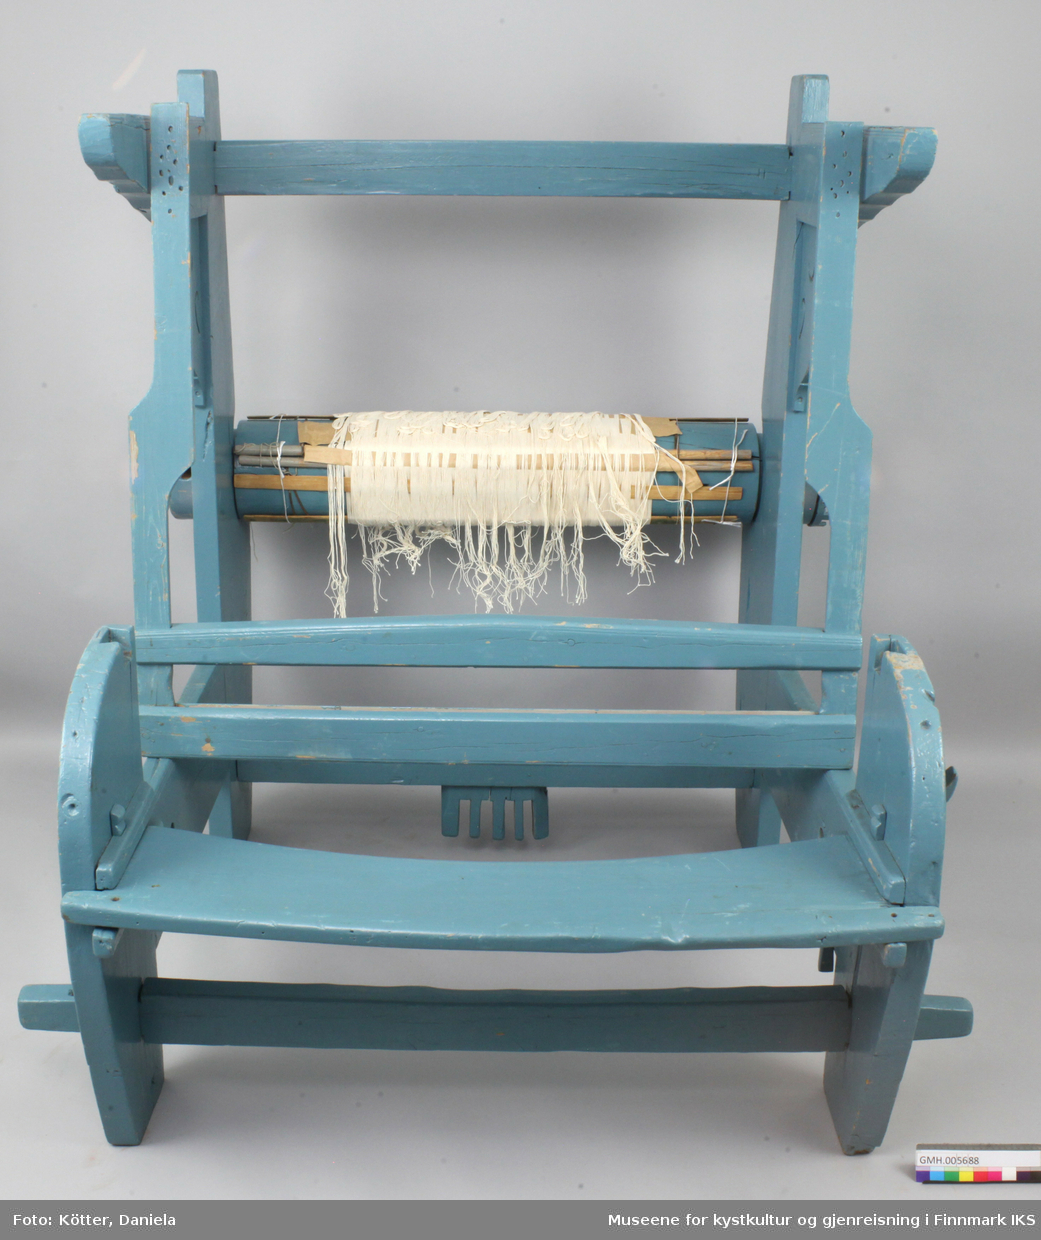 Vevstolen er bygd av tre og overflaten er overtrukket med blå lakk. Delene har slagmerker ved sammenføyningene til enklere montering. Vevstolen fremstår som fragmentarisk. Oppheng til skjeslaget, brystbom, stoffbom og mange andre vesentlige deler mangler. På garnbommen er det sveipet på renningen og spiler. Det er mulig at denne vevstolen var supplert med deler registrert som GMH.005690.